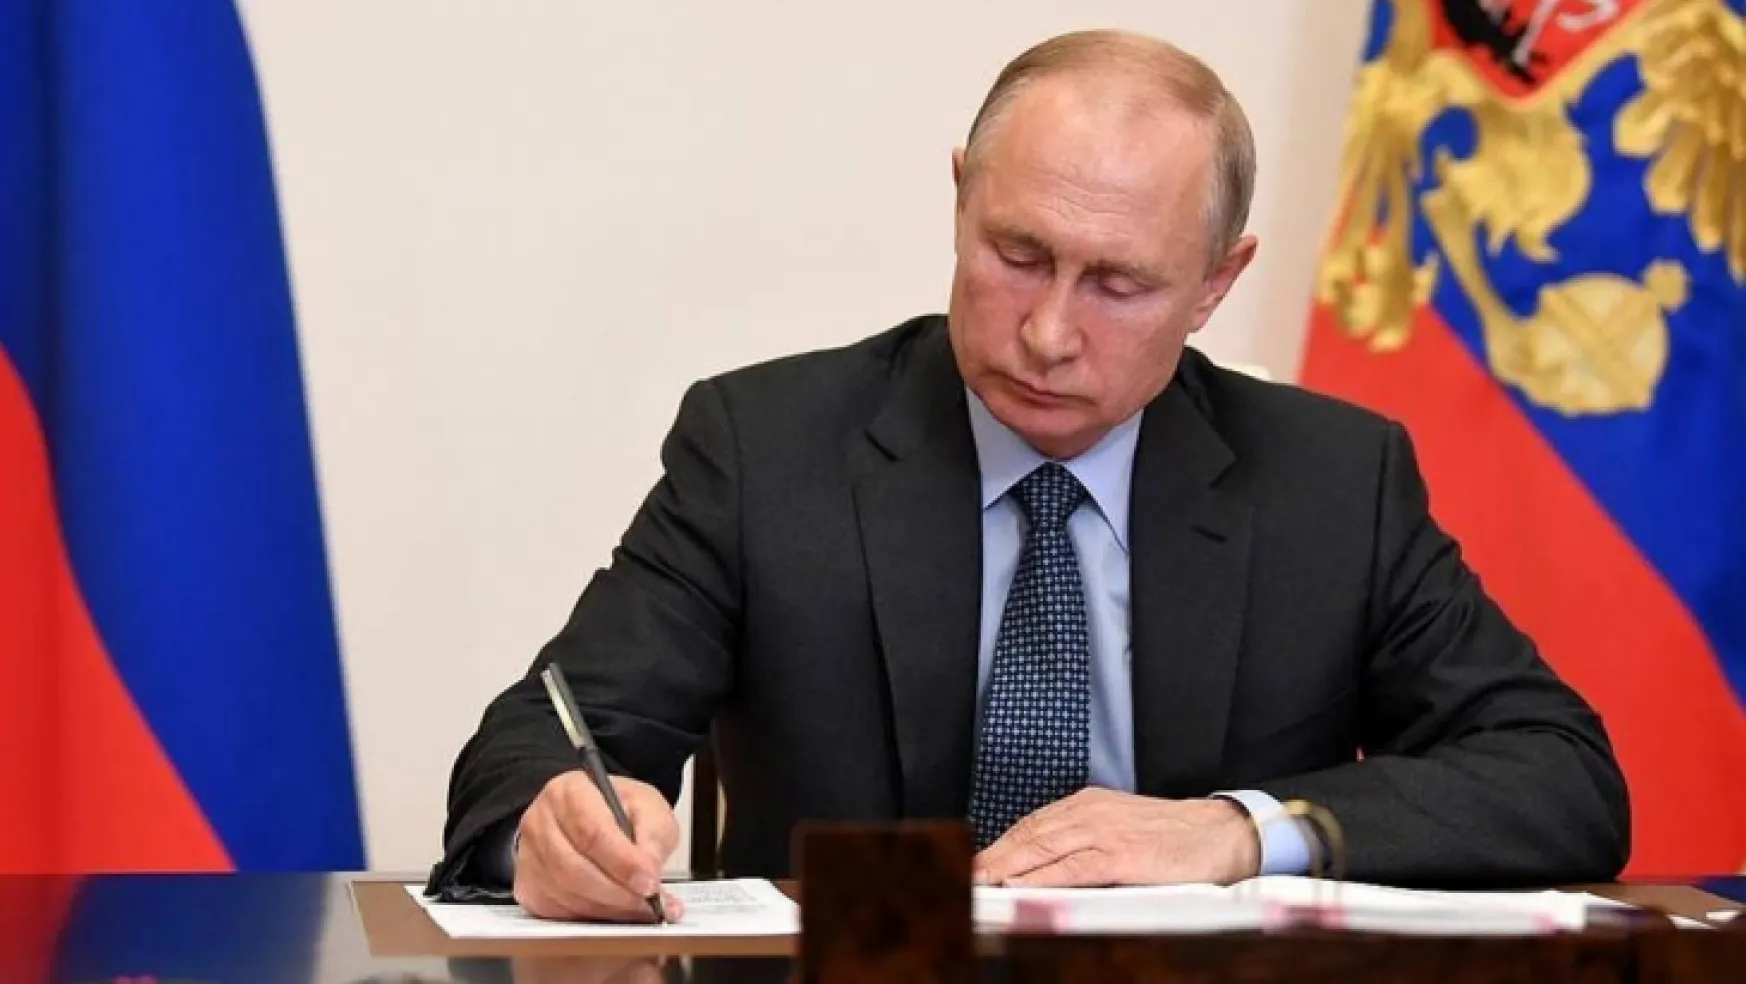 Putin seferberlikten kaçmanın cezasını artıran kararnameyi imzaladı